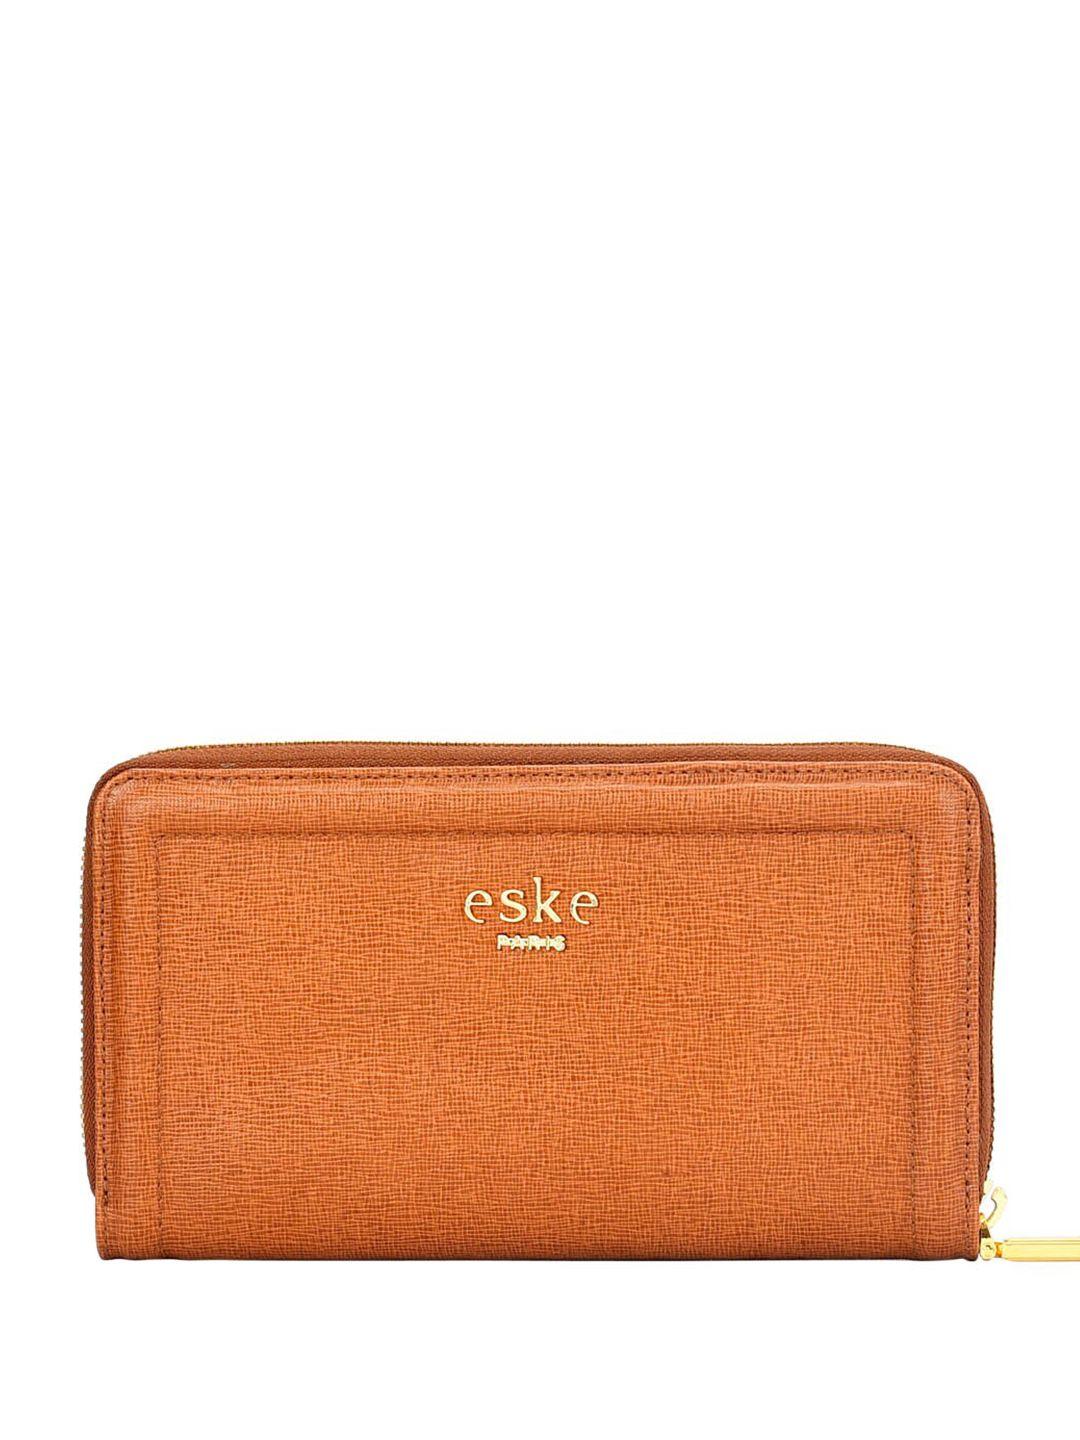 eske women textured leather rfid zip around wallet